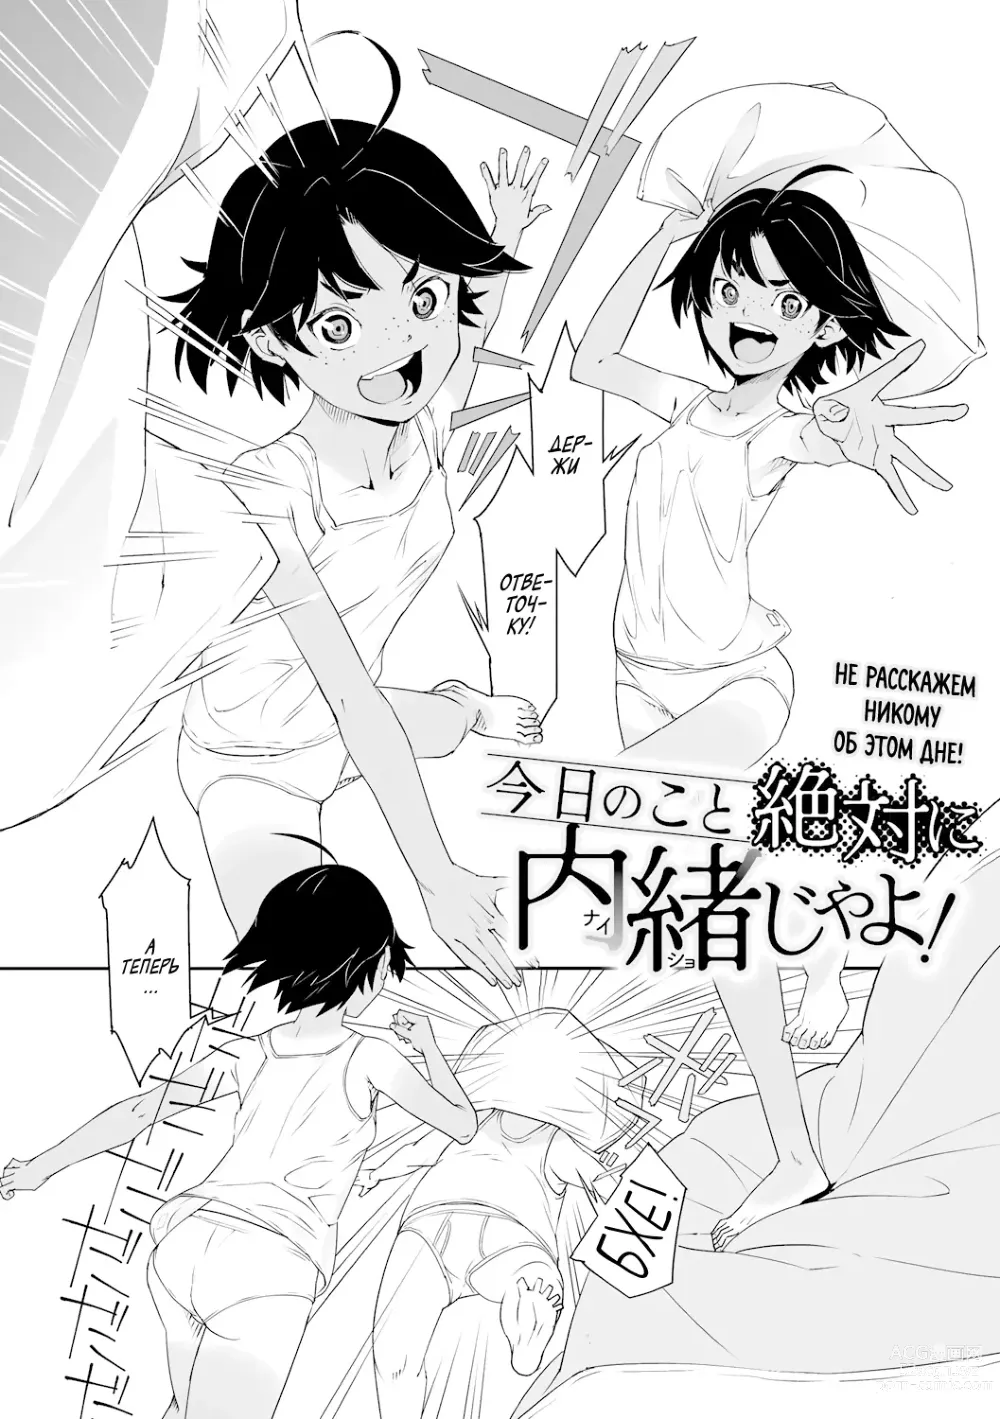 Page 2 of manga Не расскажем никому об этом дне! (decensored)